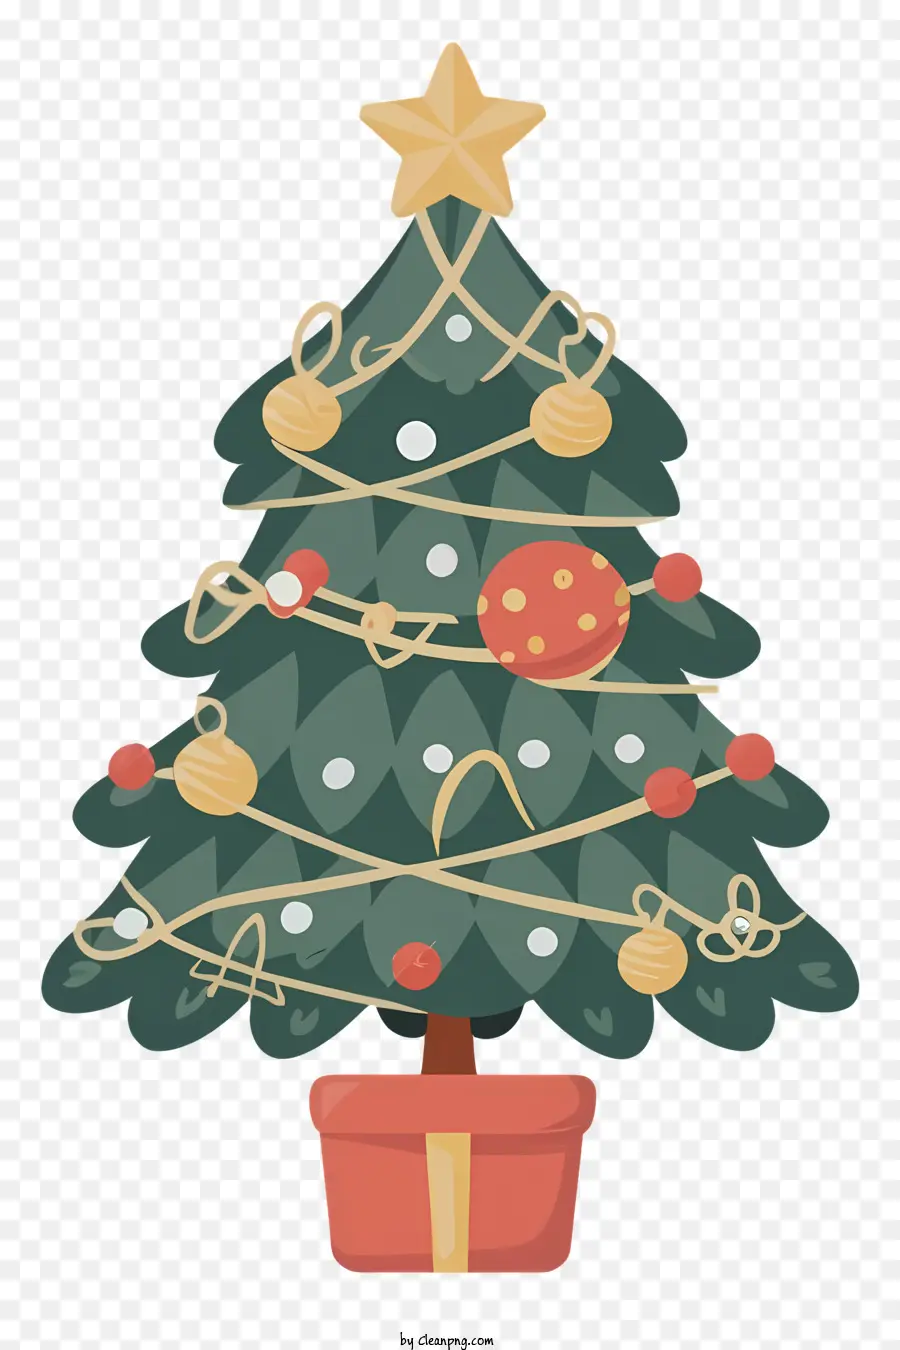 Weihnachtsbaum - Dekorierter Weihnachtsbaum mit Topfpflanztopper